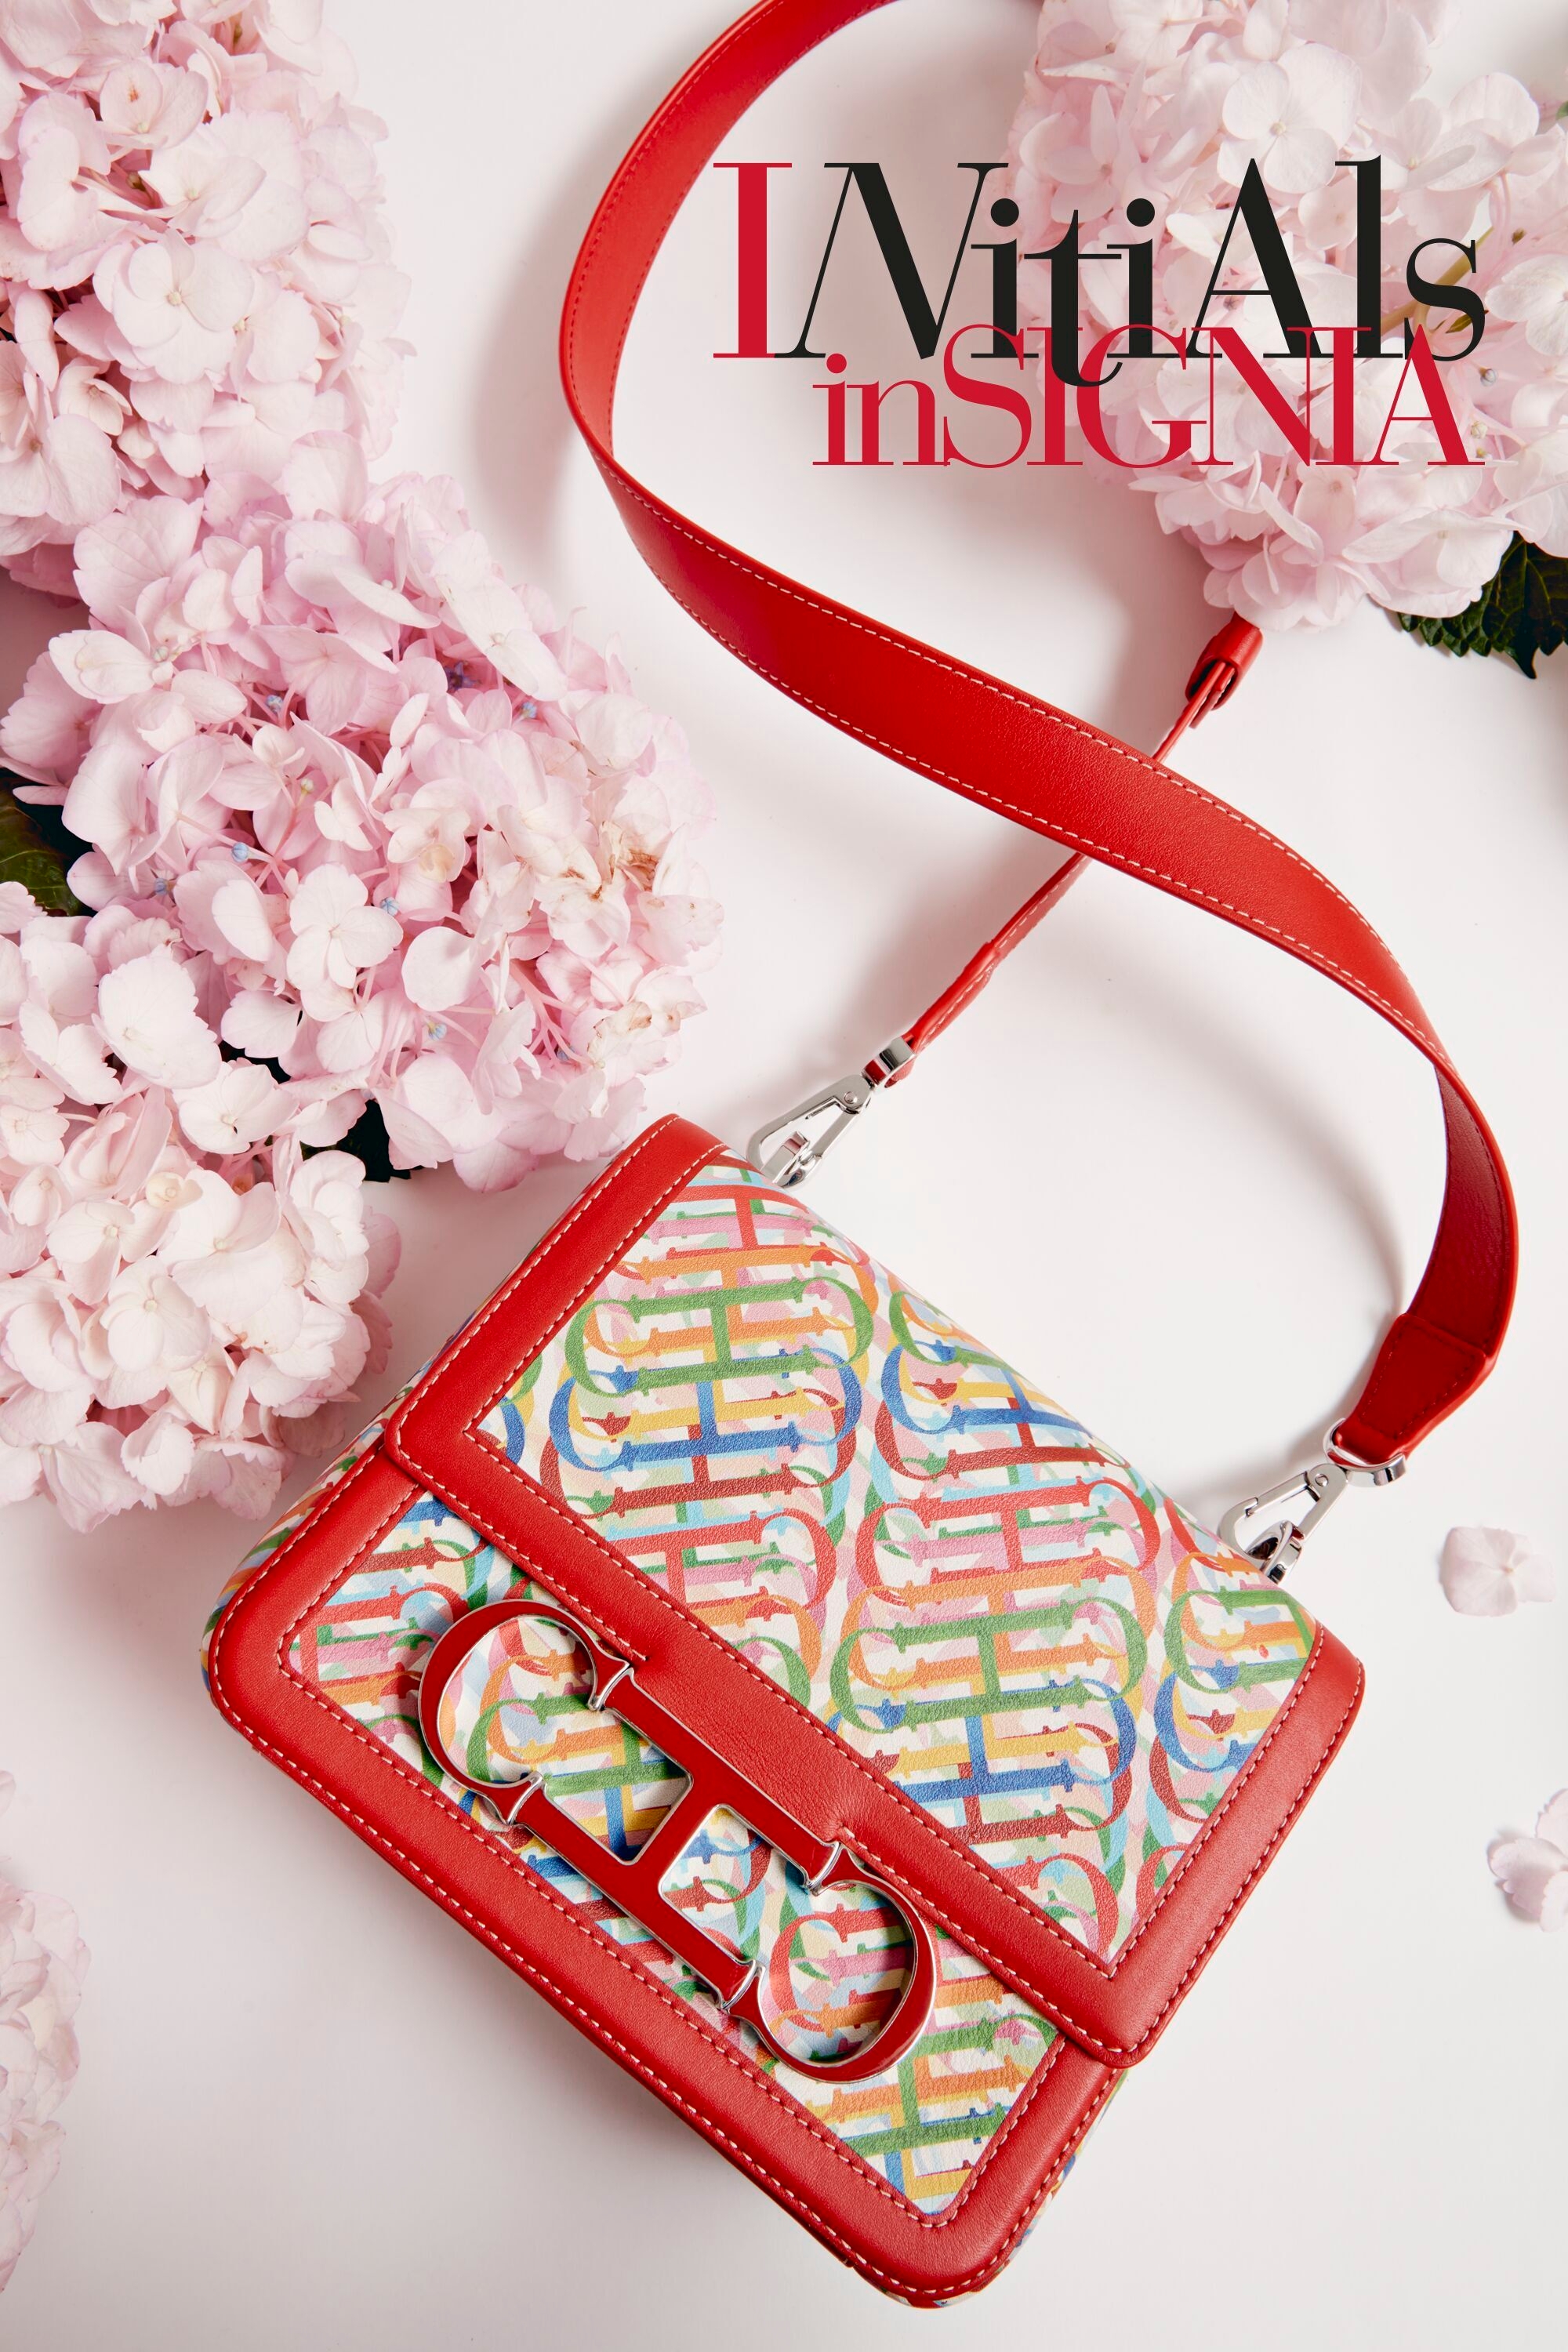 Initials Insignia | Medium shoulder bag